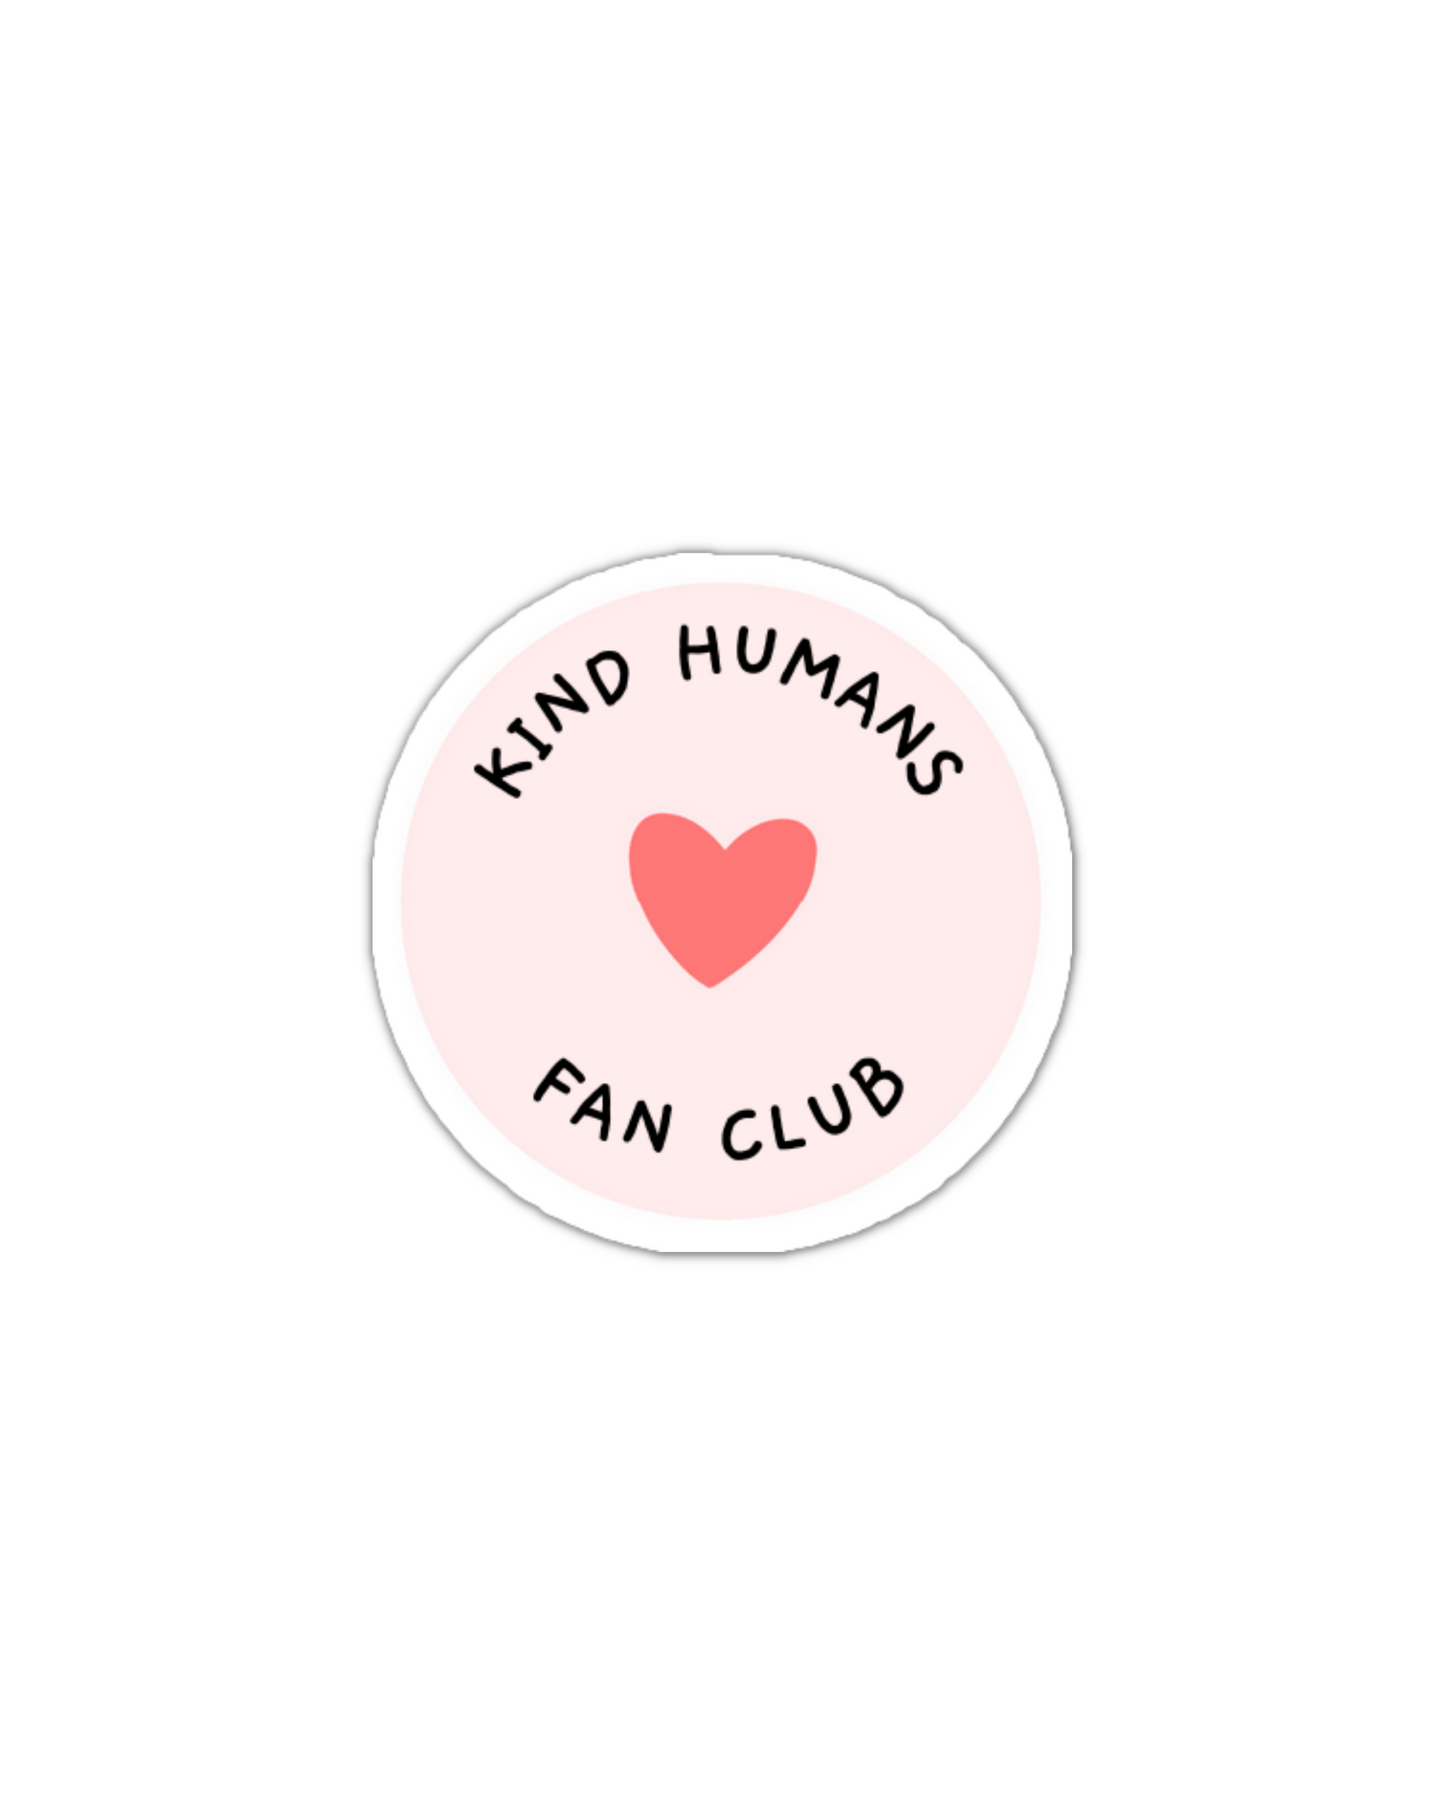 Kind humans fan club enamel pin